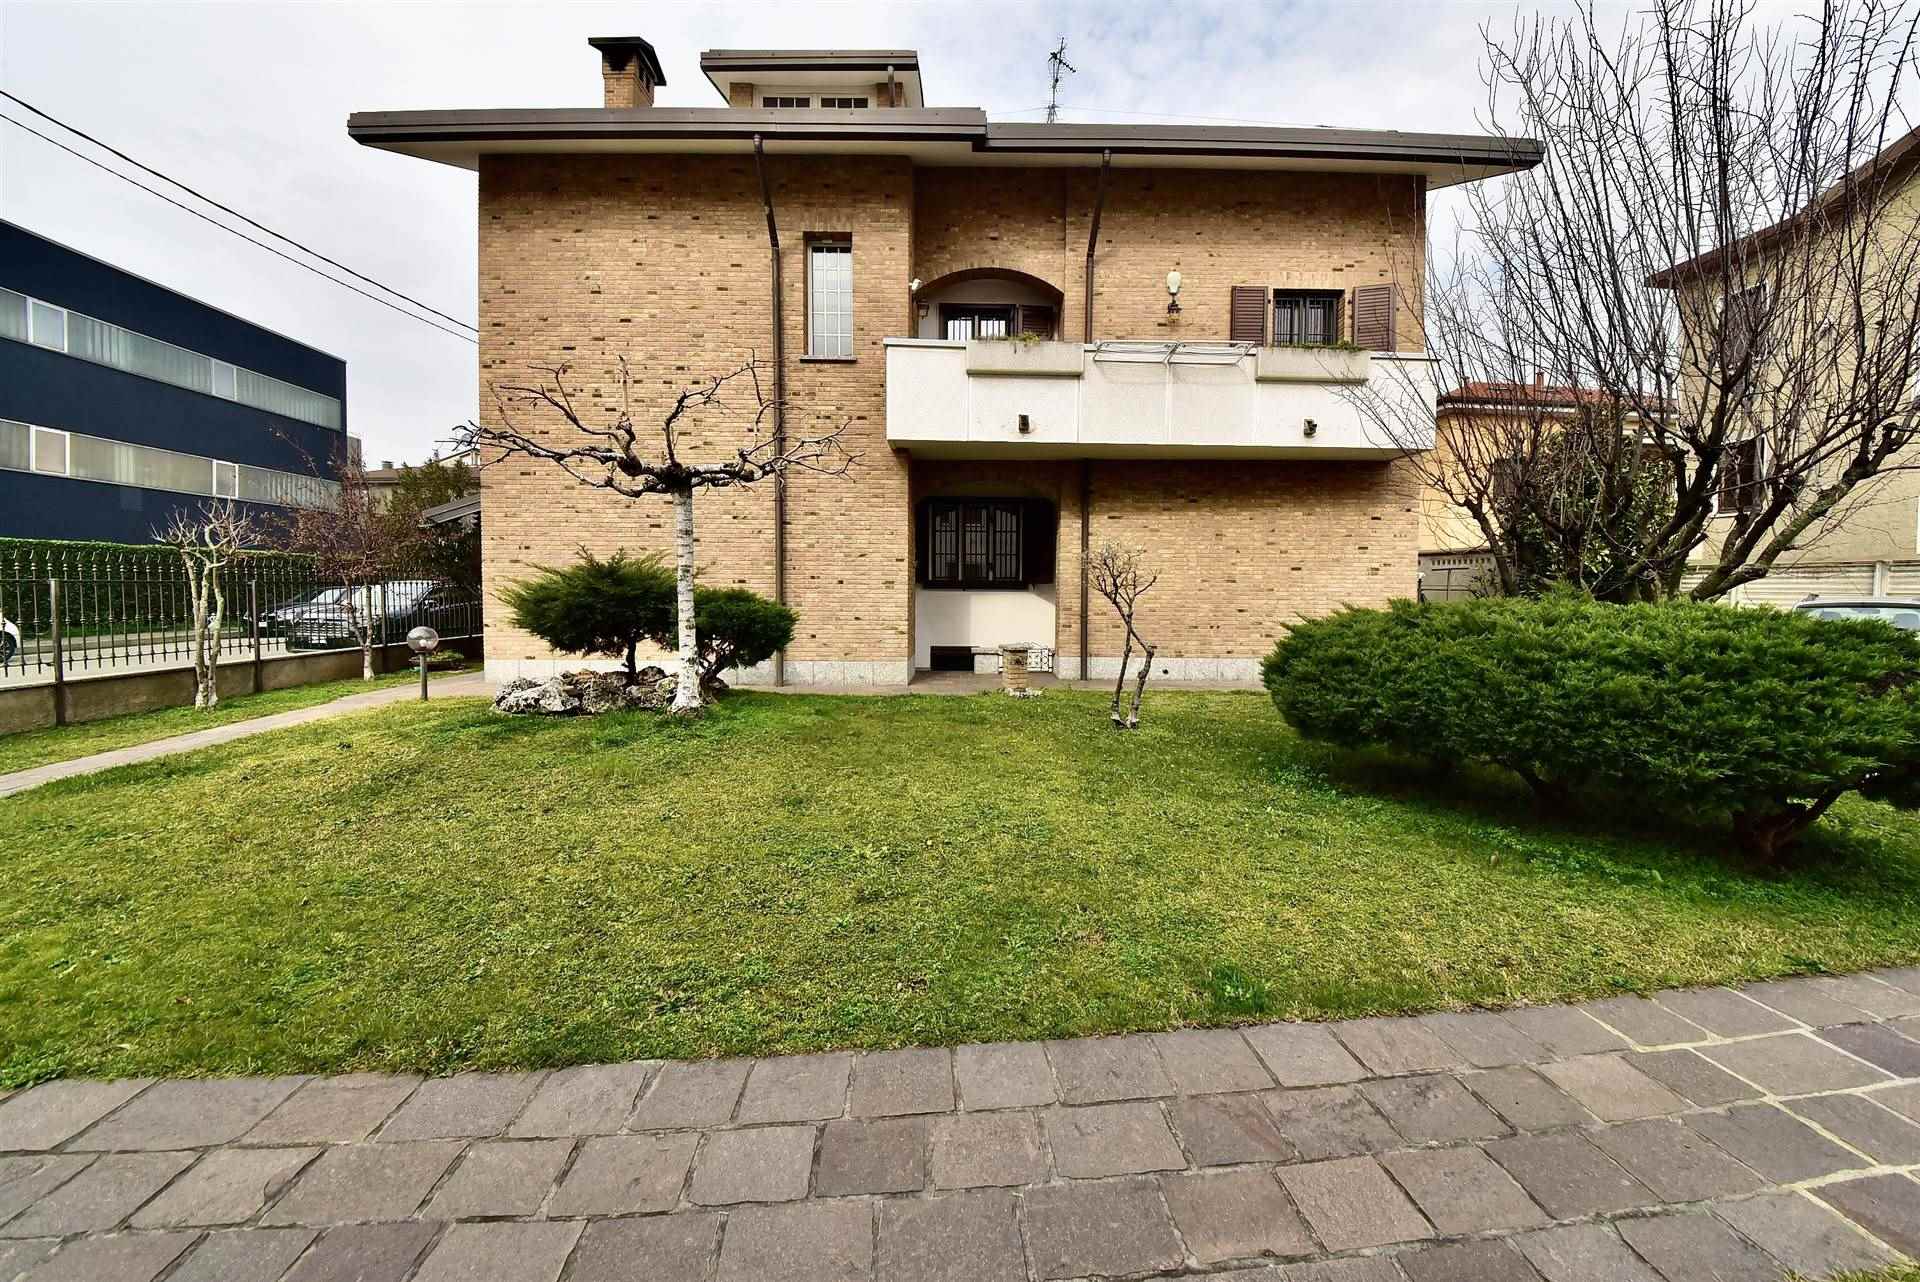 Villa in ottime condizioni a Nova Milanese